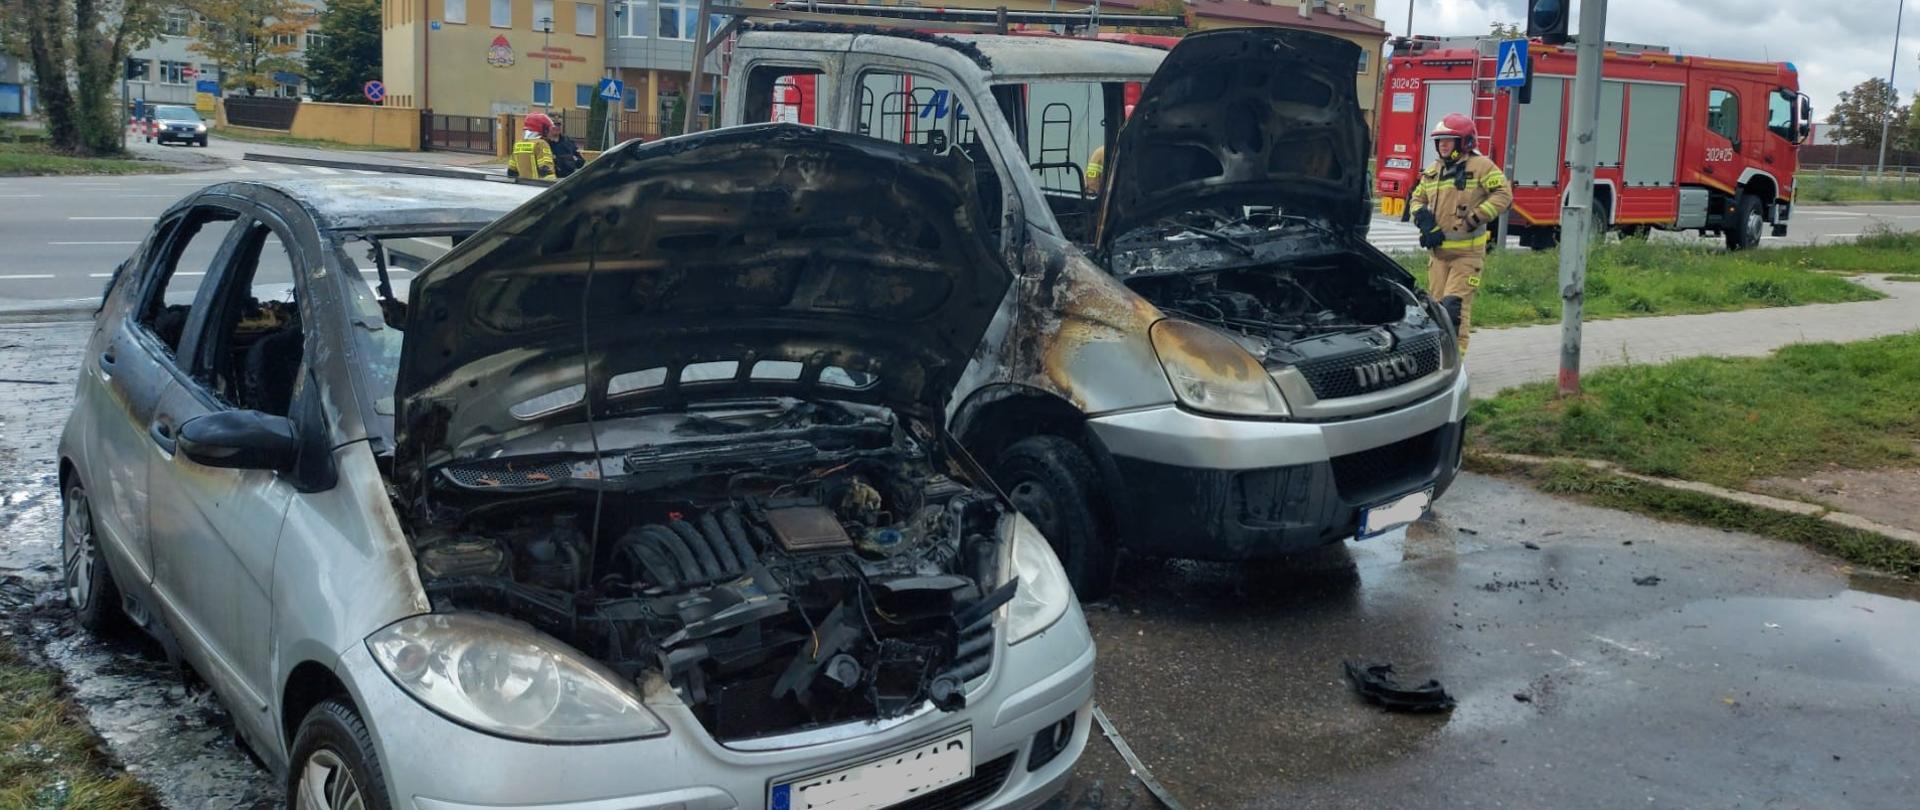 Zdjęcie przedstawia dwa auta, które uległy spaleniu. Za pojazdami widać dwa wozy strażackie.